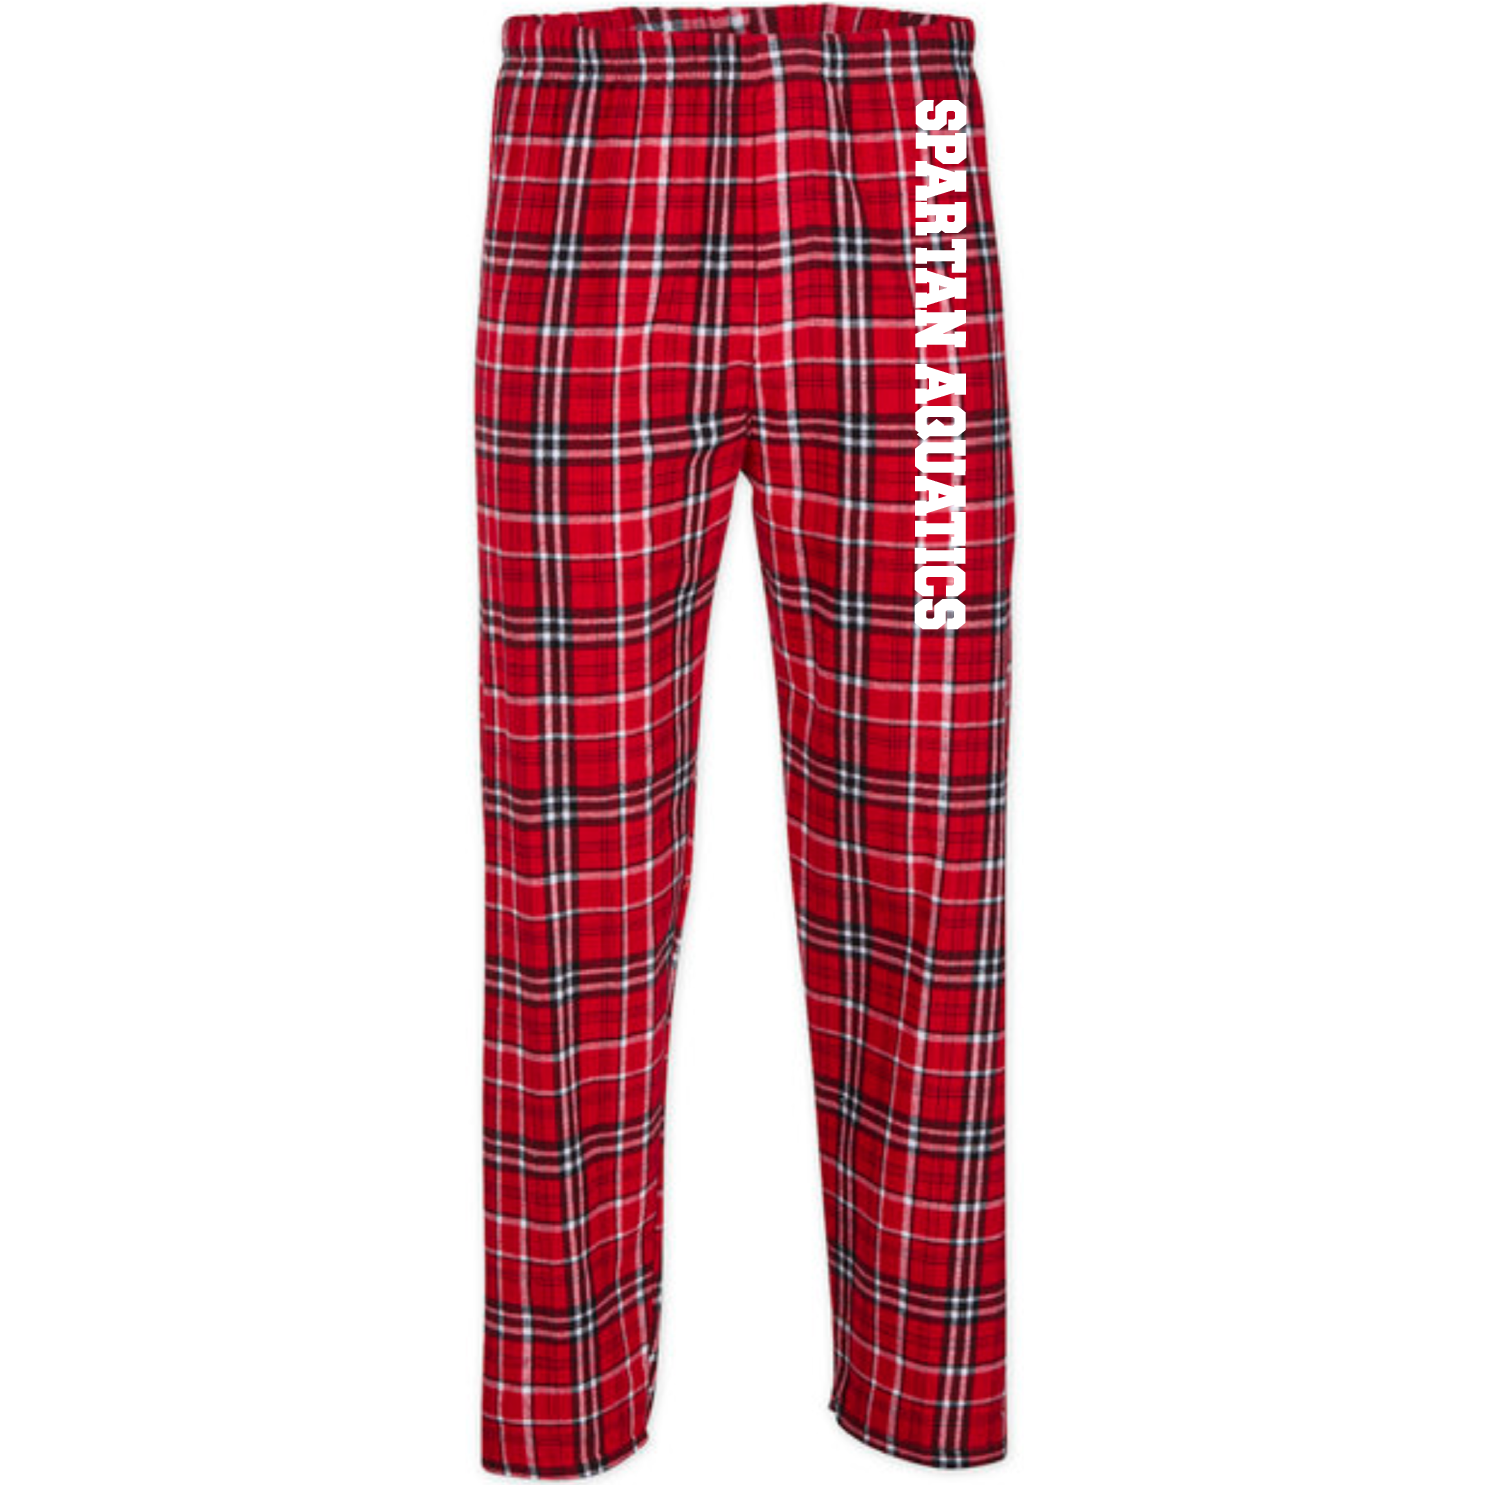 Boxercraft Flannel Pants (Customized) - Spartans